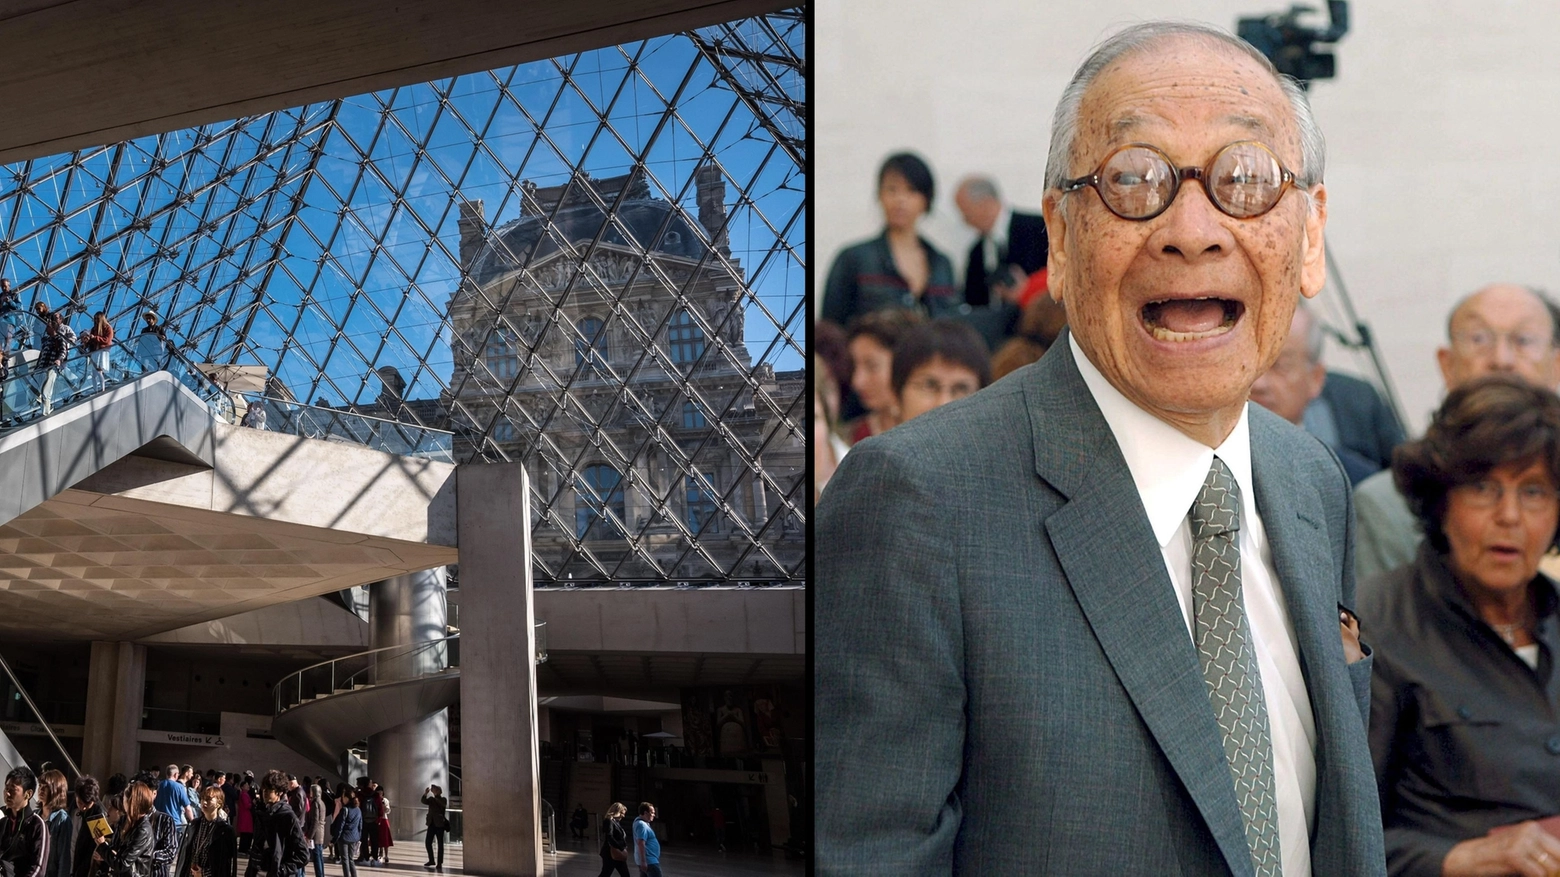 La piramide di vetro del Louvre e l'architetto Ieoh Ming Pei (Ansa)